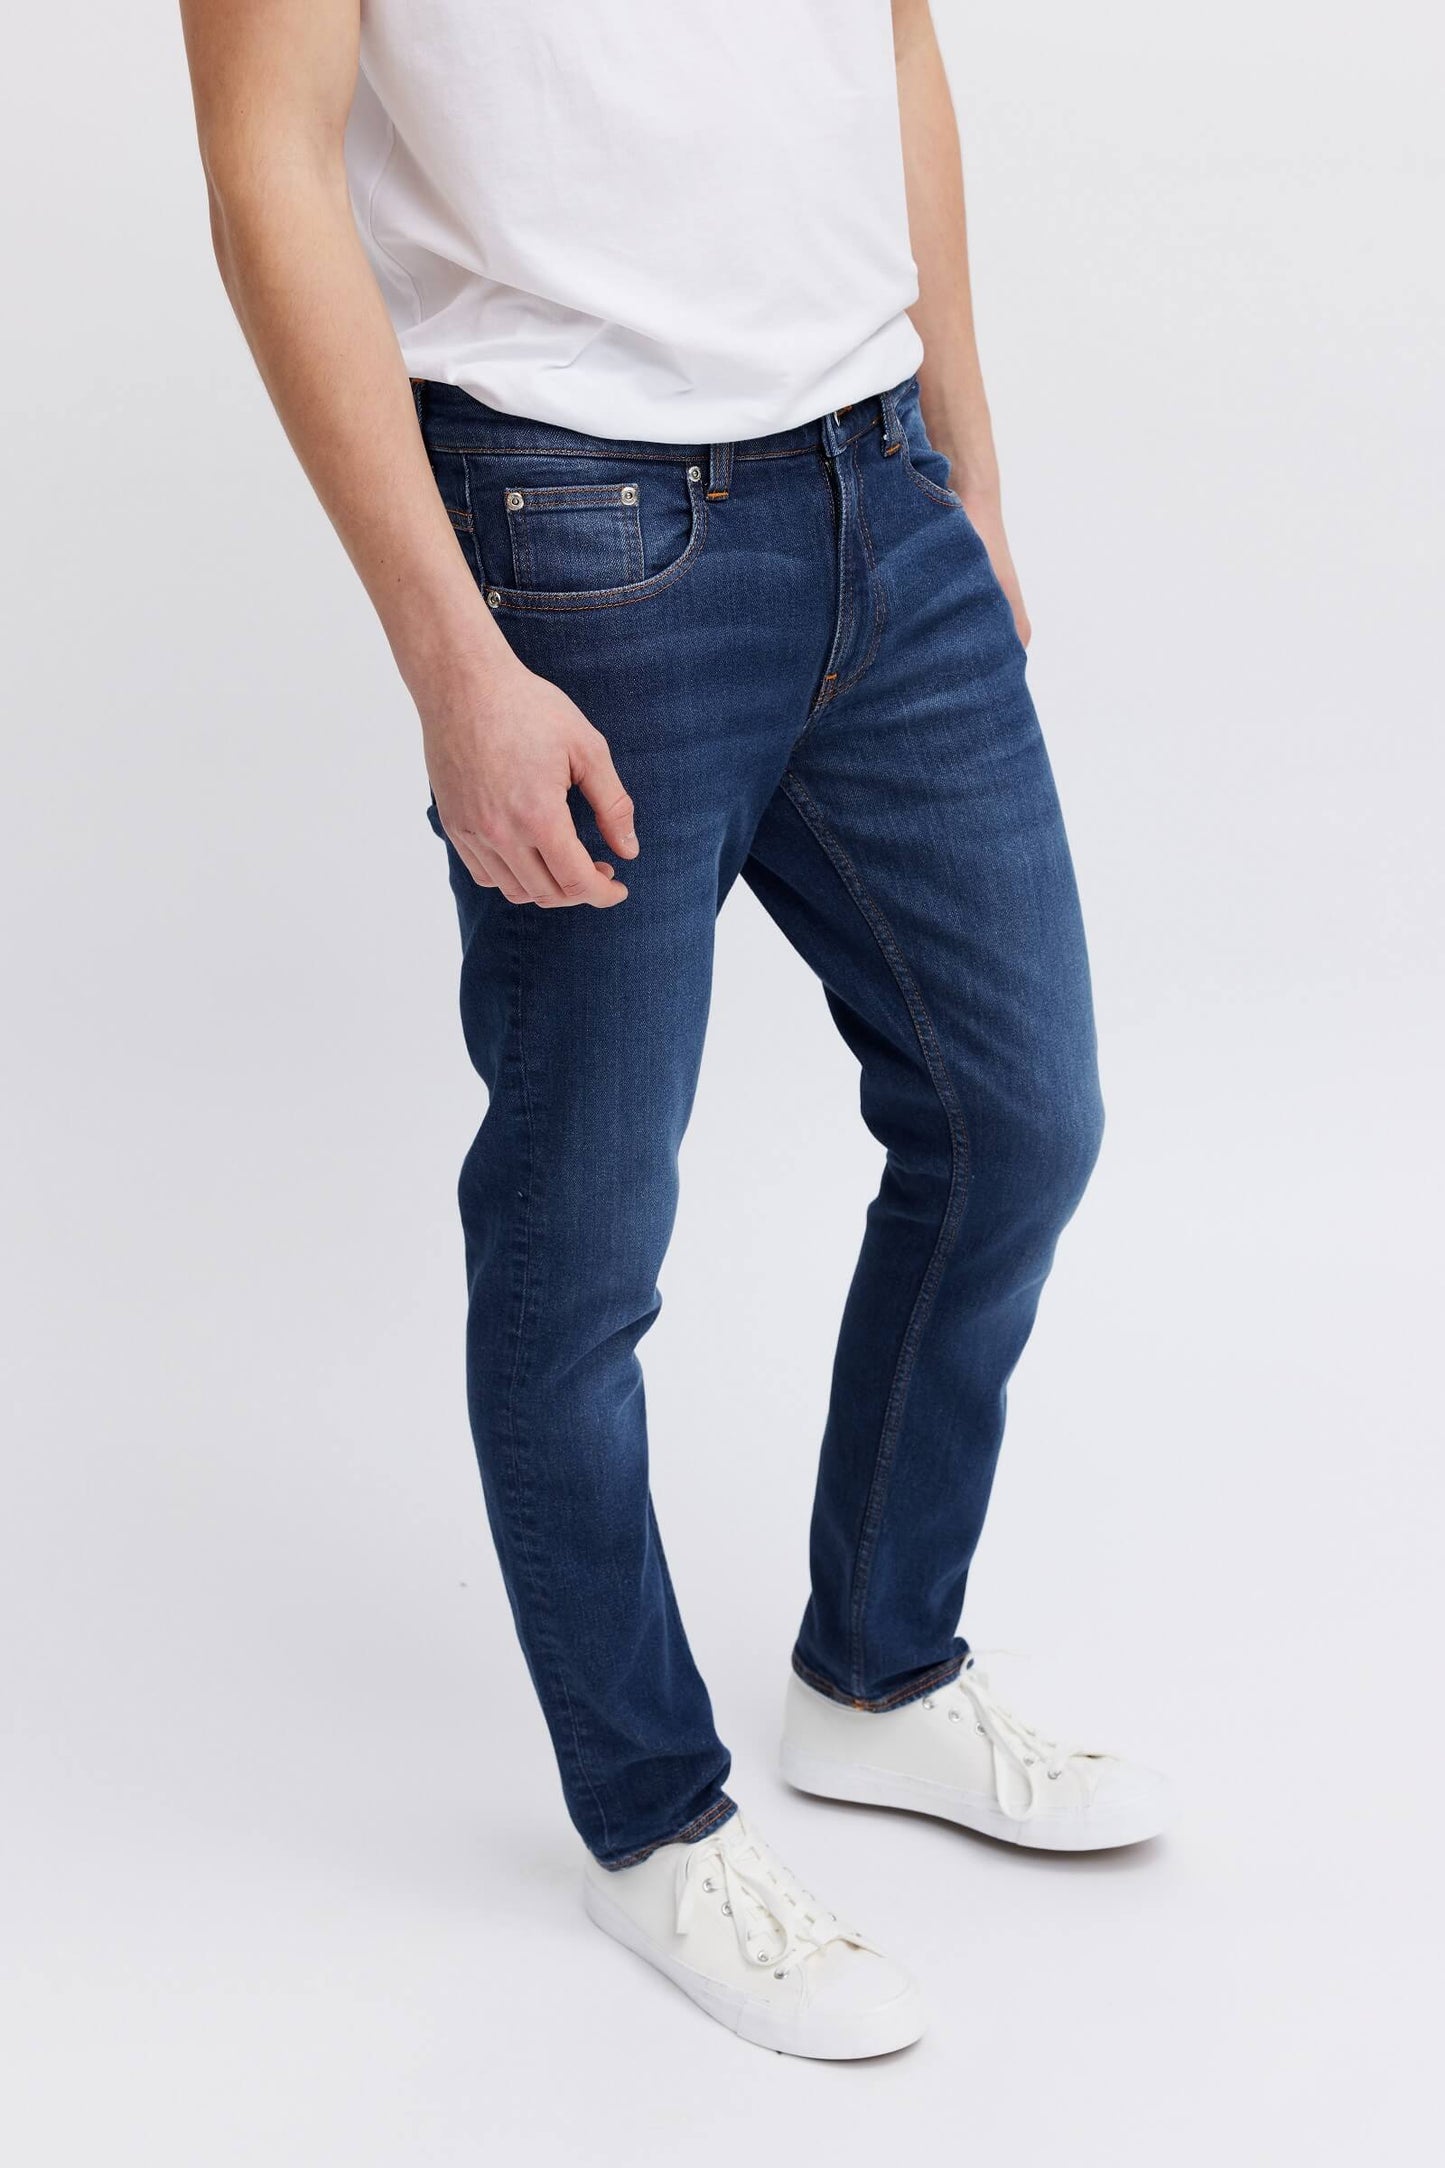 Best ethical denim jeans for men 